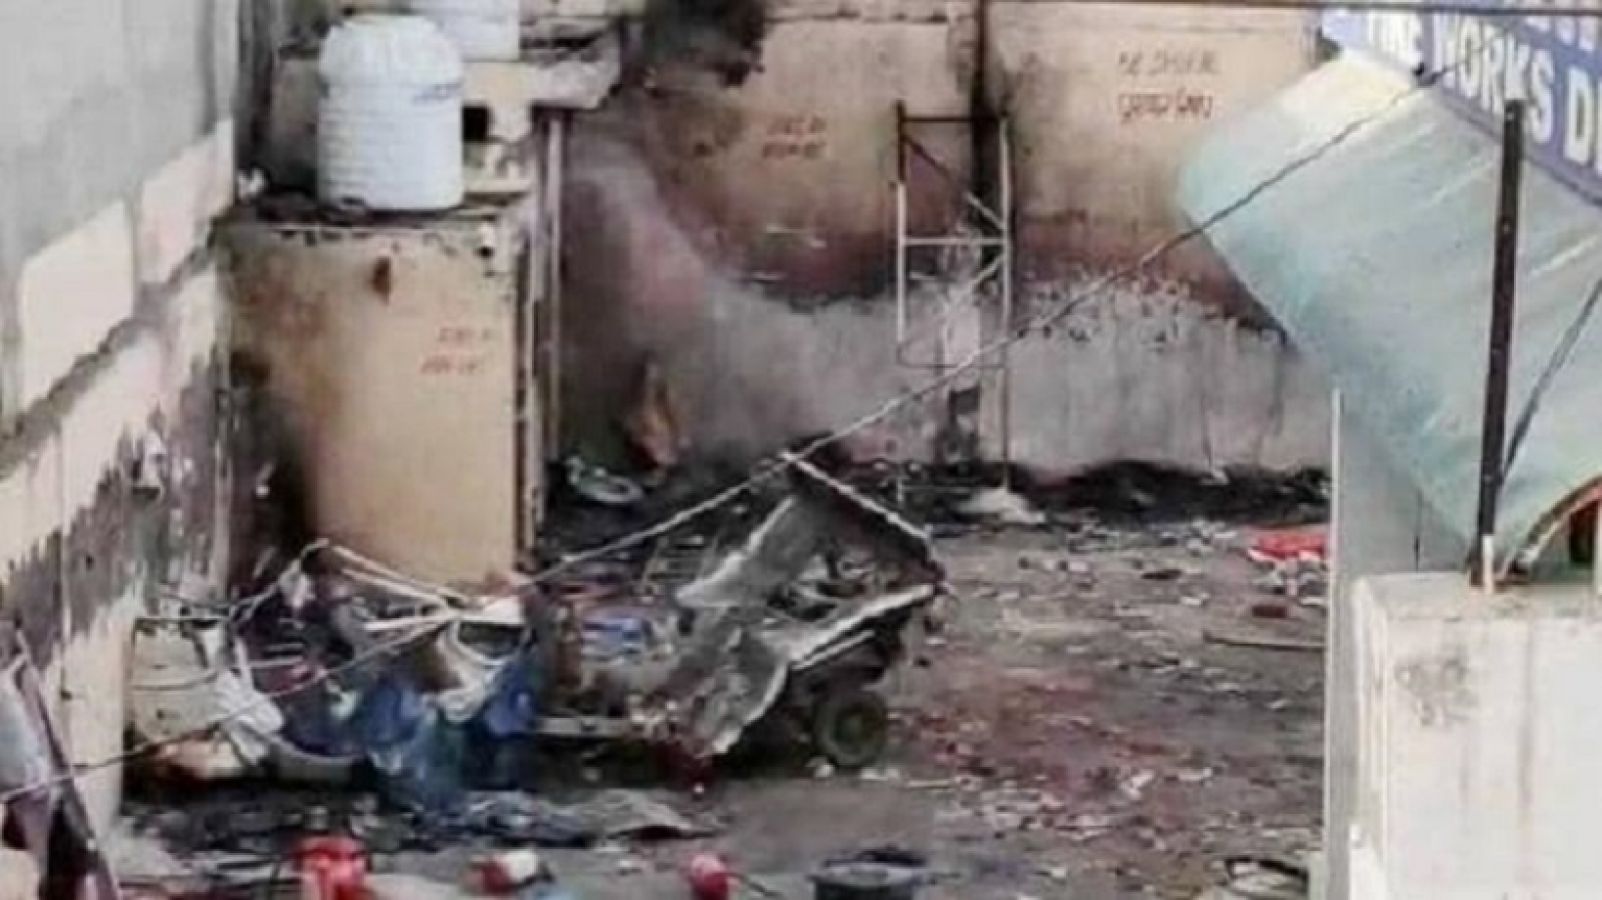 पटाखा गोदाम में अचानक हुआ जोरदार विस्फोट, आग भड़कने से दो की मौत पांच घायल